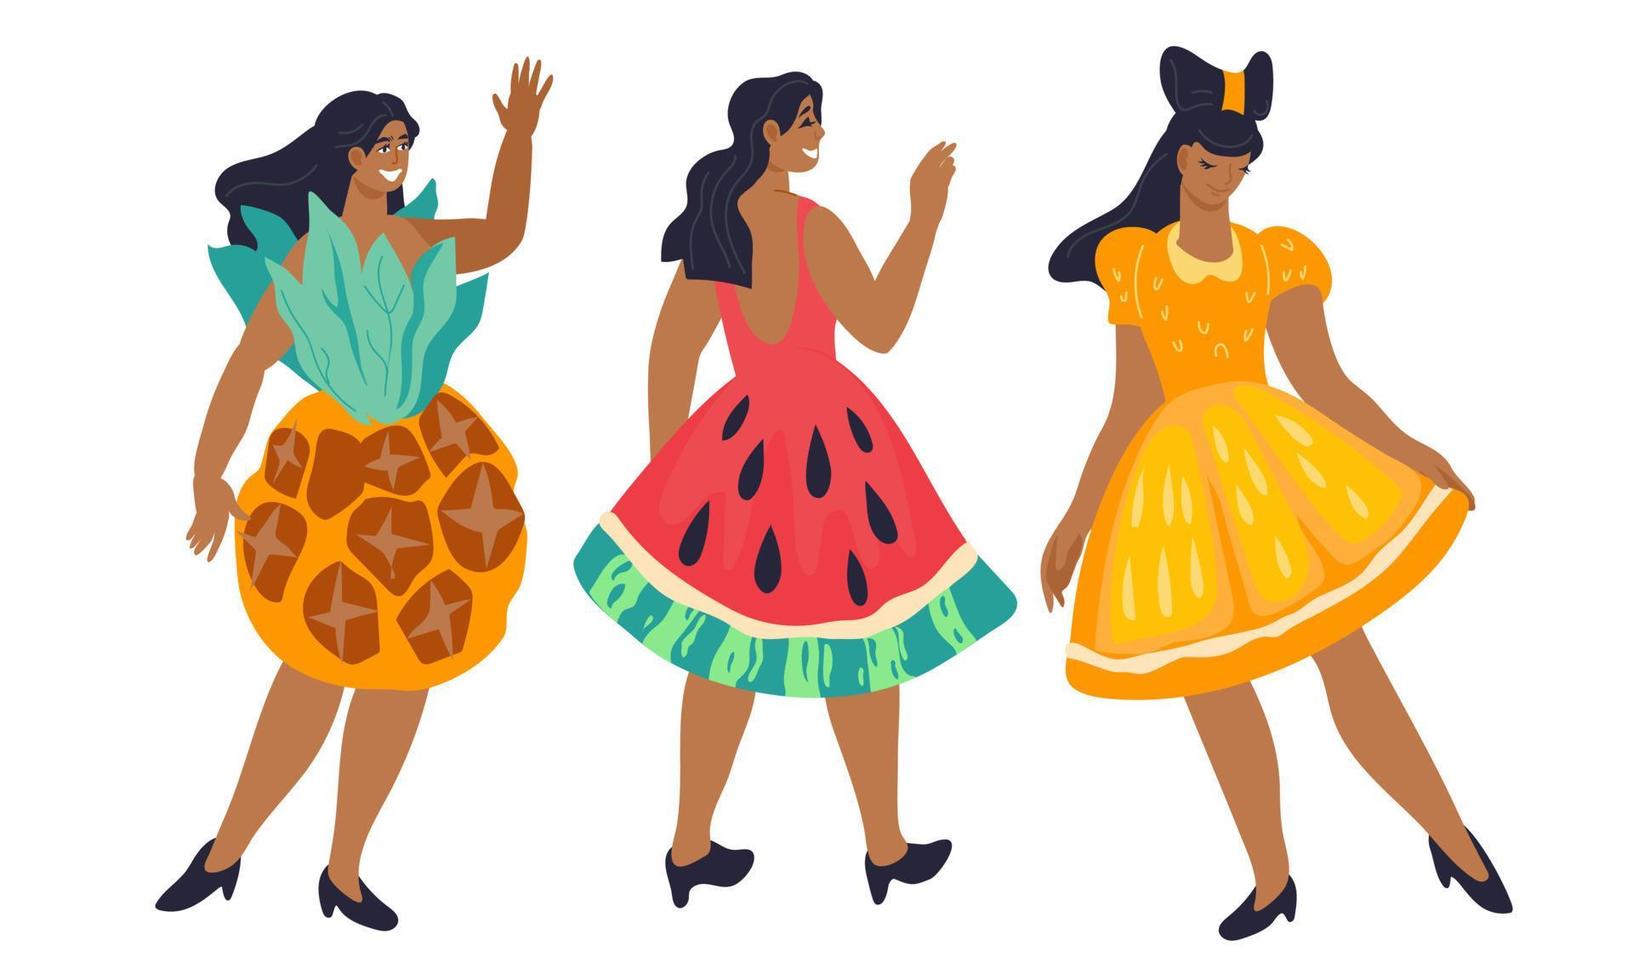 personajes femeninos con vestidos creativos en forma de frutas tropicales para la pancarta o invitación de la fiesta de verano. diseño de vacaciones para coctelería o rave de baile. ilustración vectorial de dibujos animados plana aislada. vector